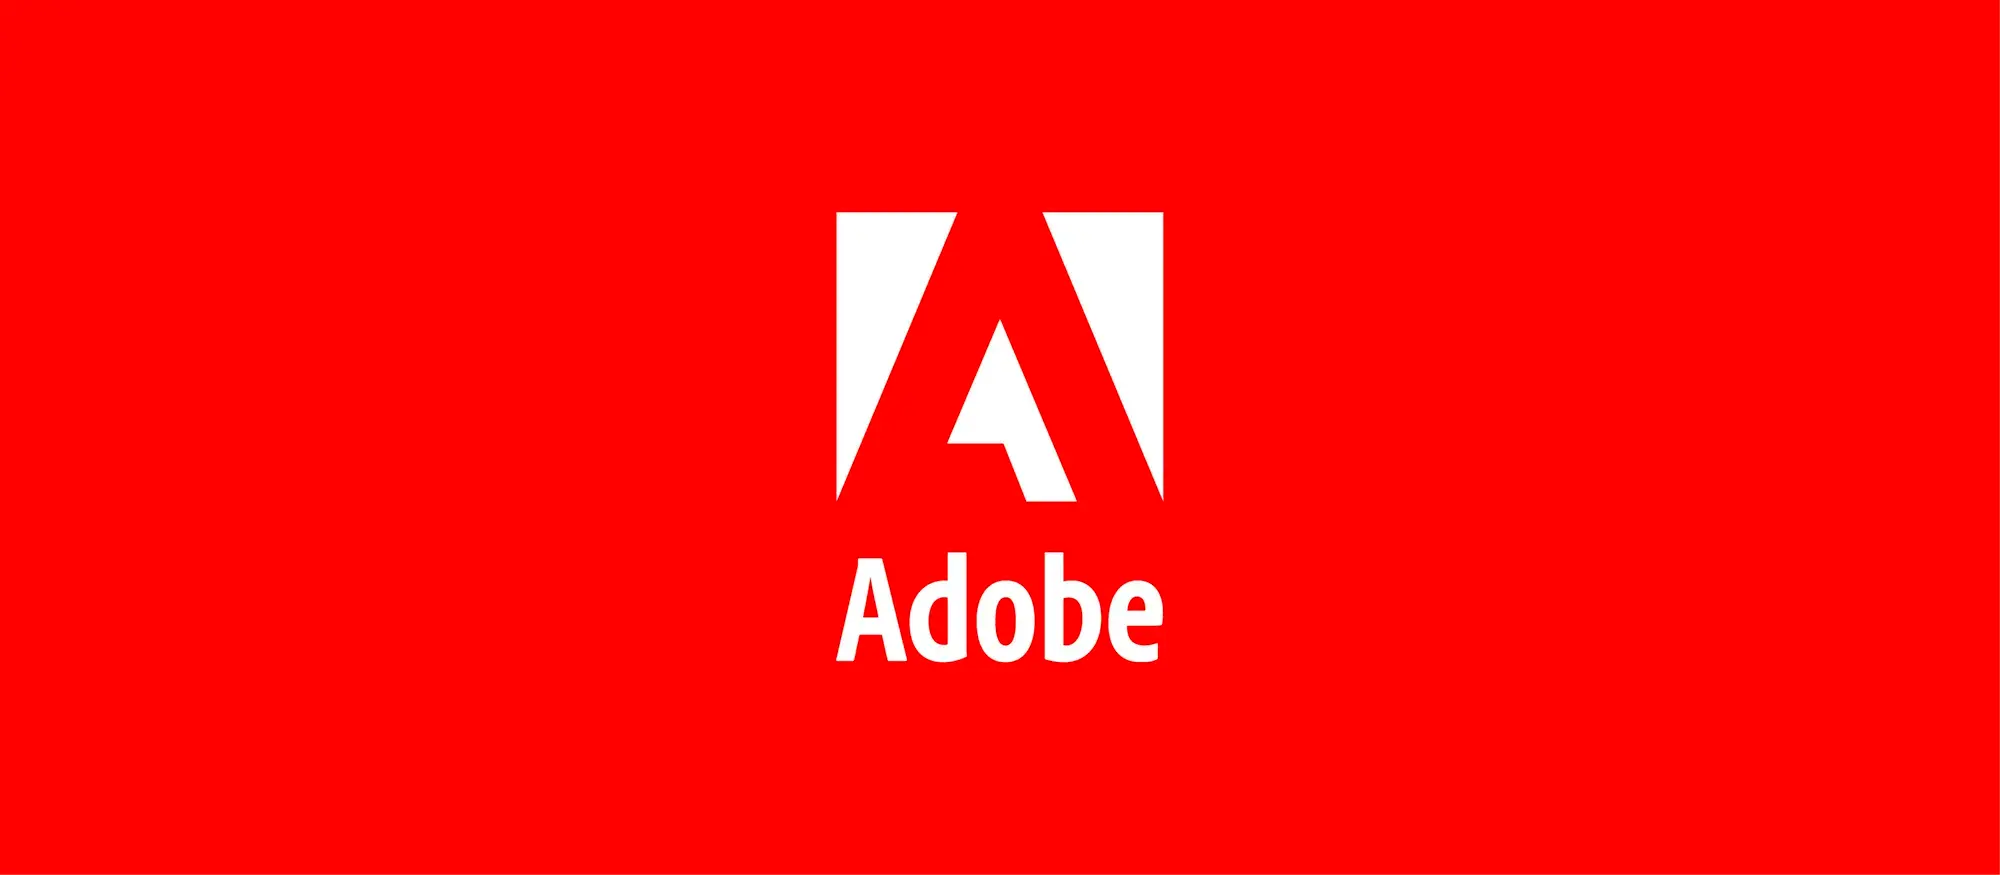 Adobe wykorzystuje sztuczną inteligencję do oddzielania ścieżek audio